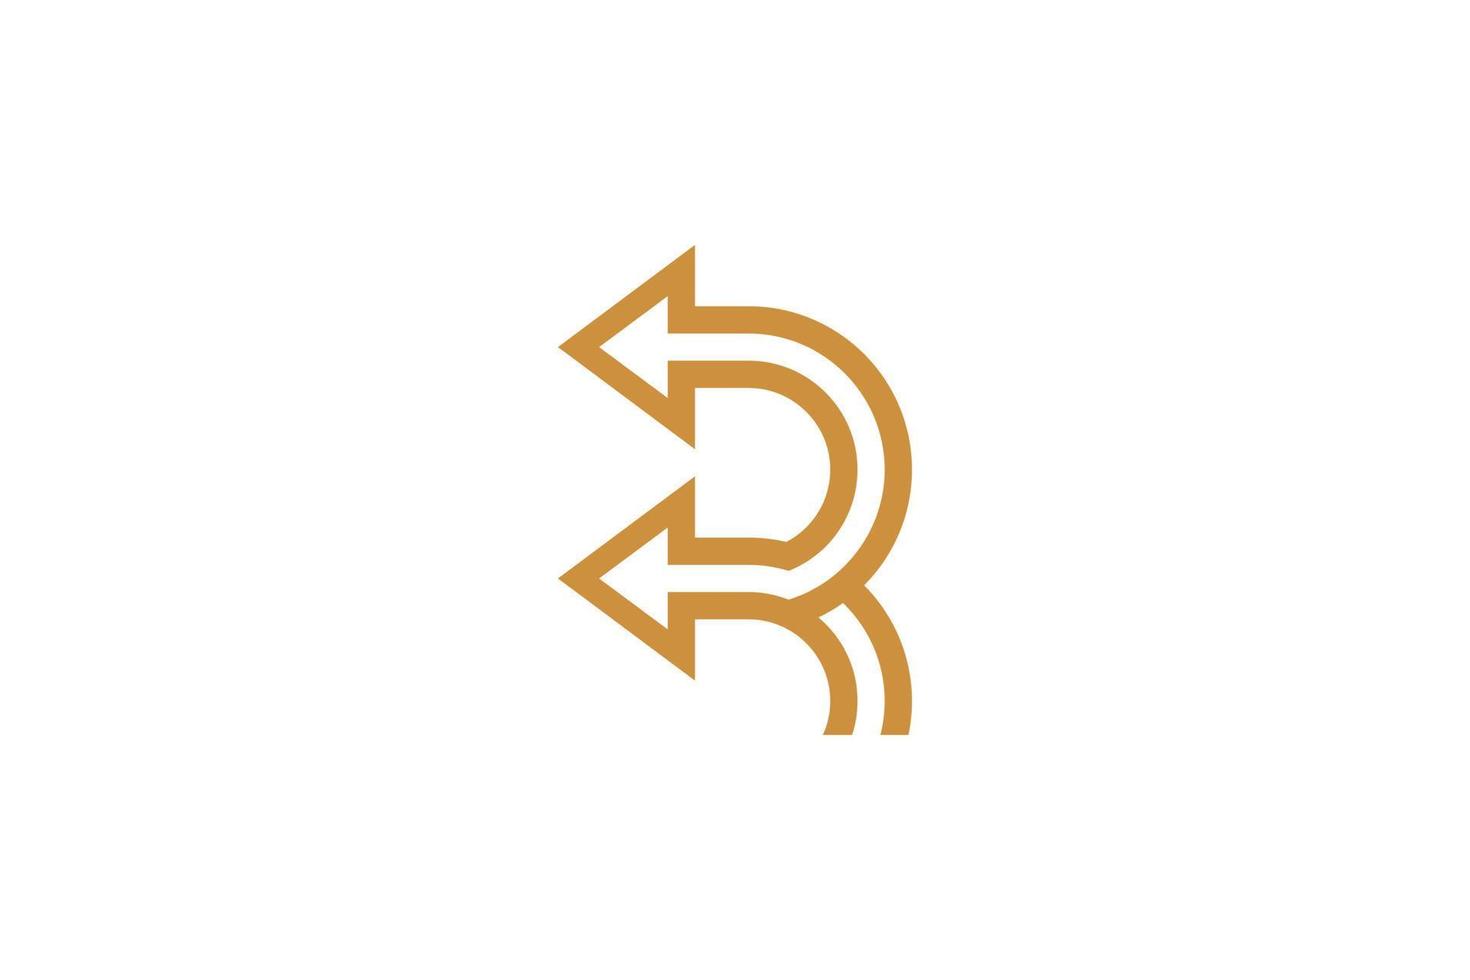 Monoline Initial Letter R Vector Logo